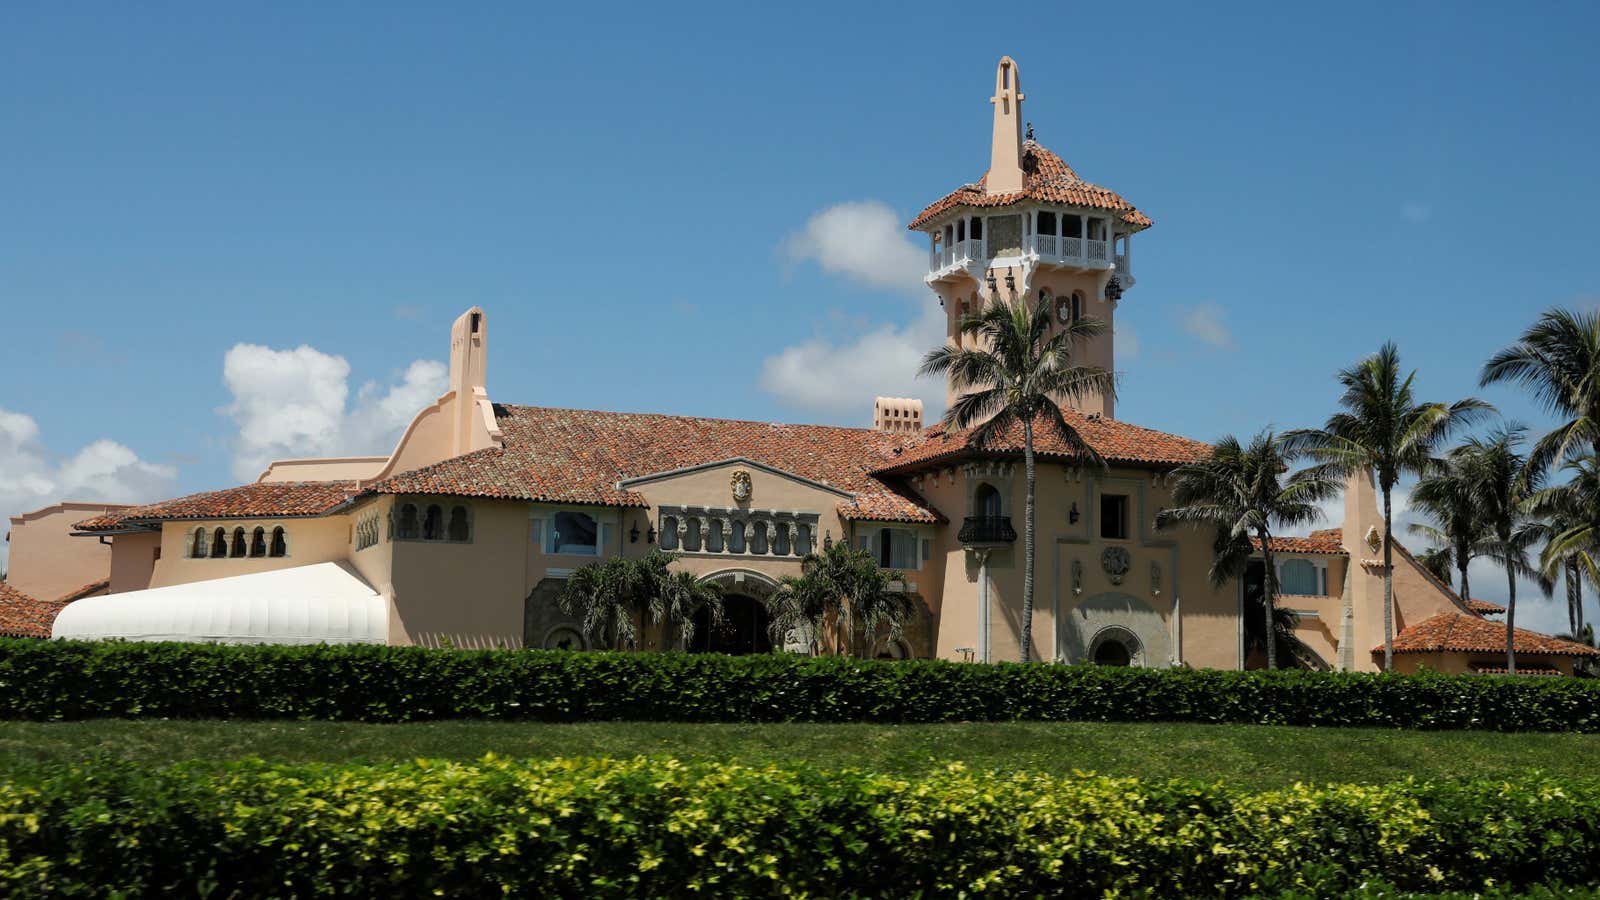 U.S. President Donald Trump’s Mar-A-Lago estate is seen in Palm Beach, Florida, U.S